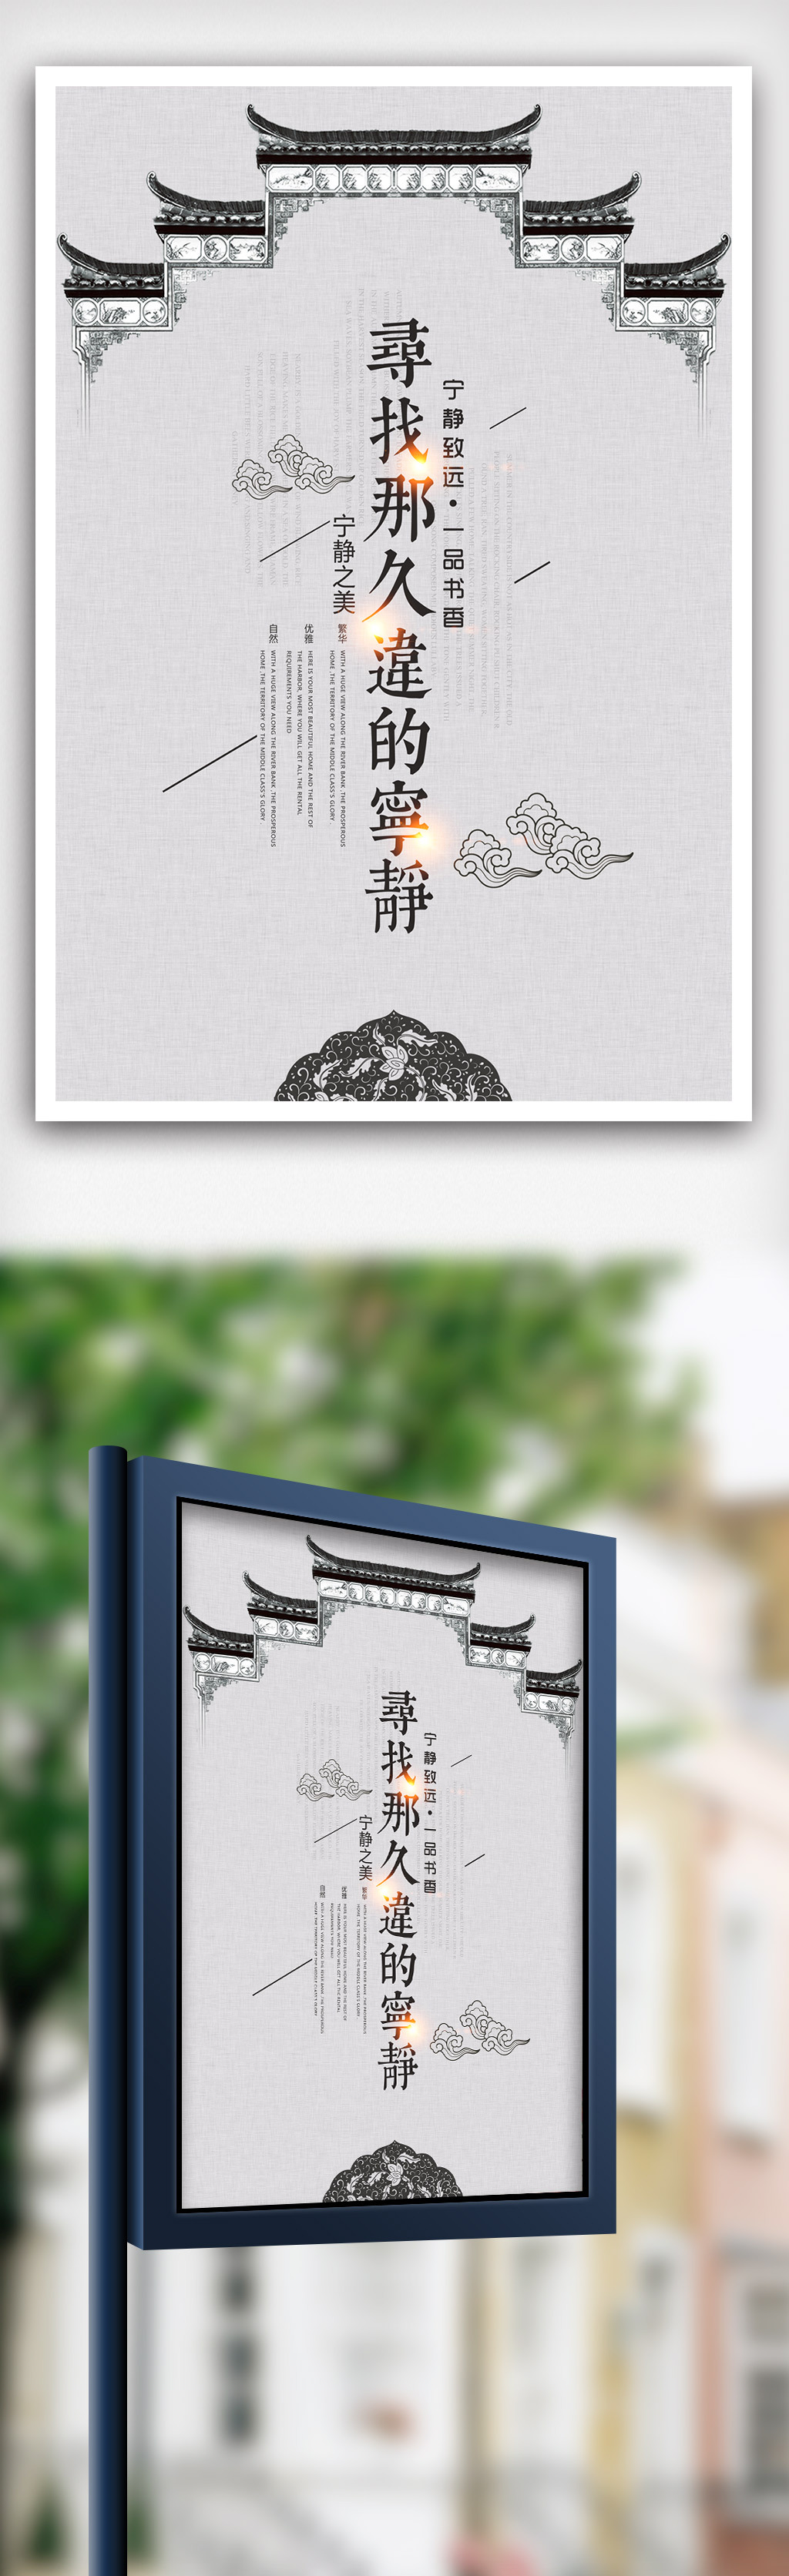 简约中国风房地产海报设计图片